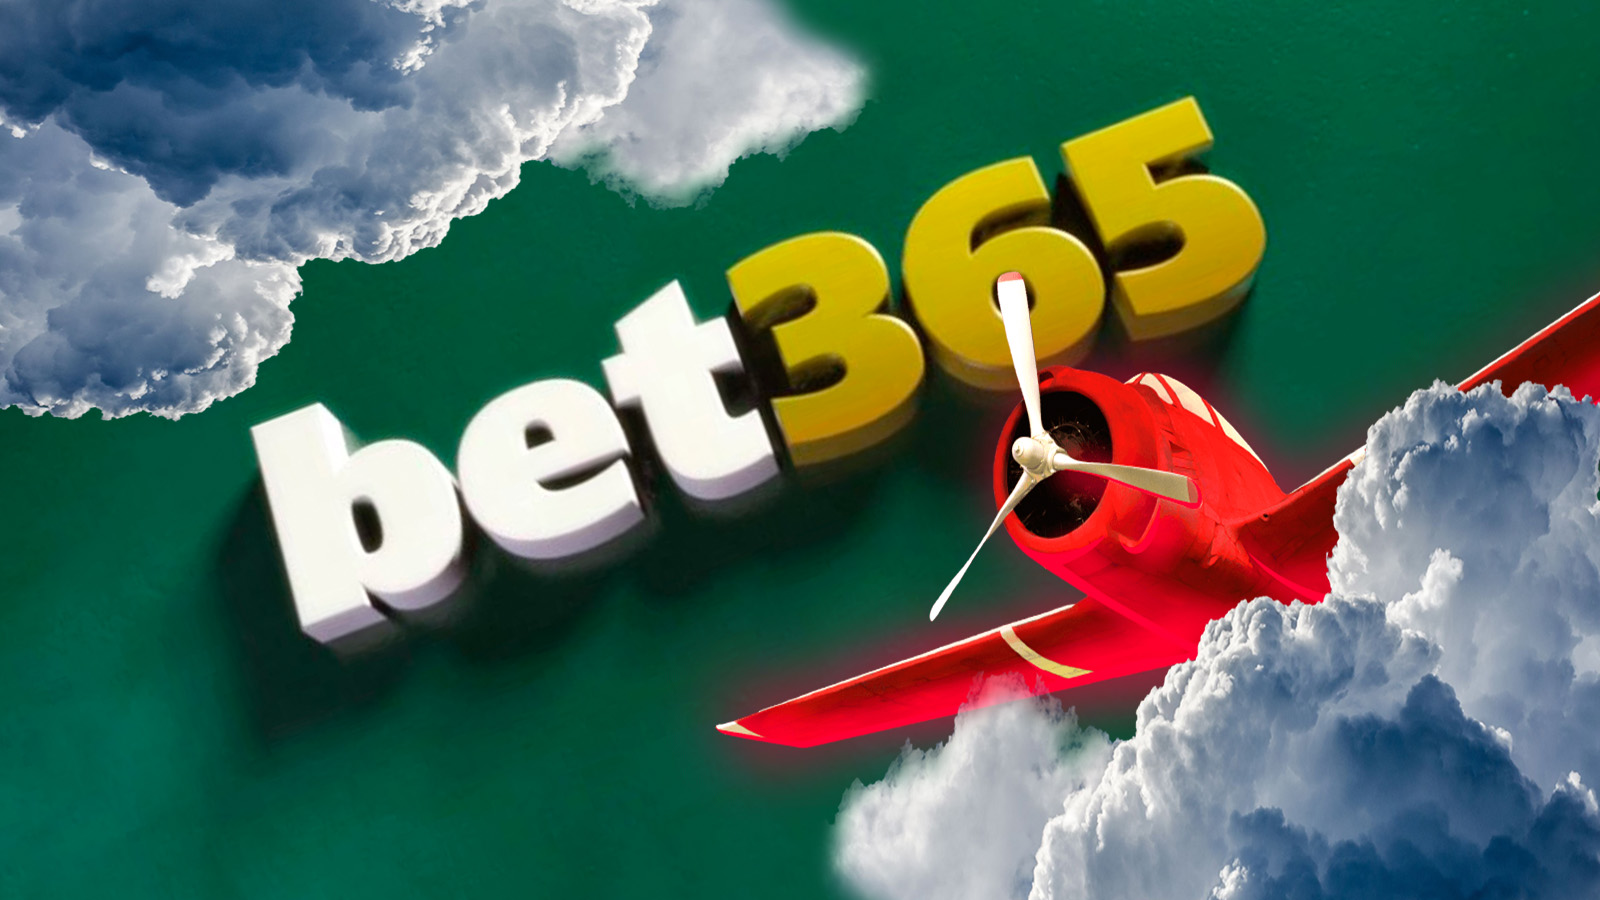 Aviator Bet365: Tem o Jogo do Aviãozinho Bet365!? Confira!